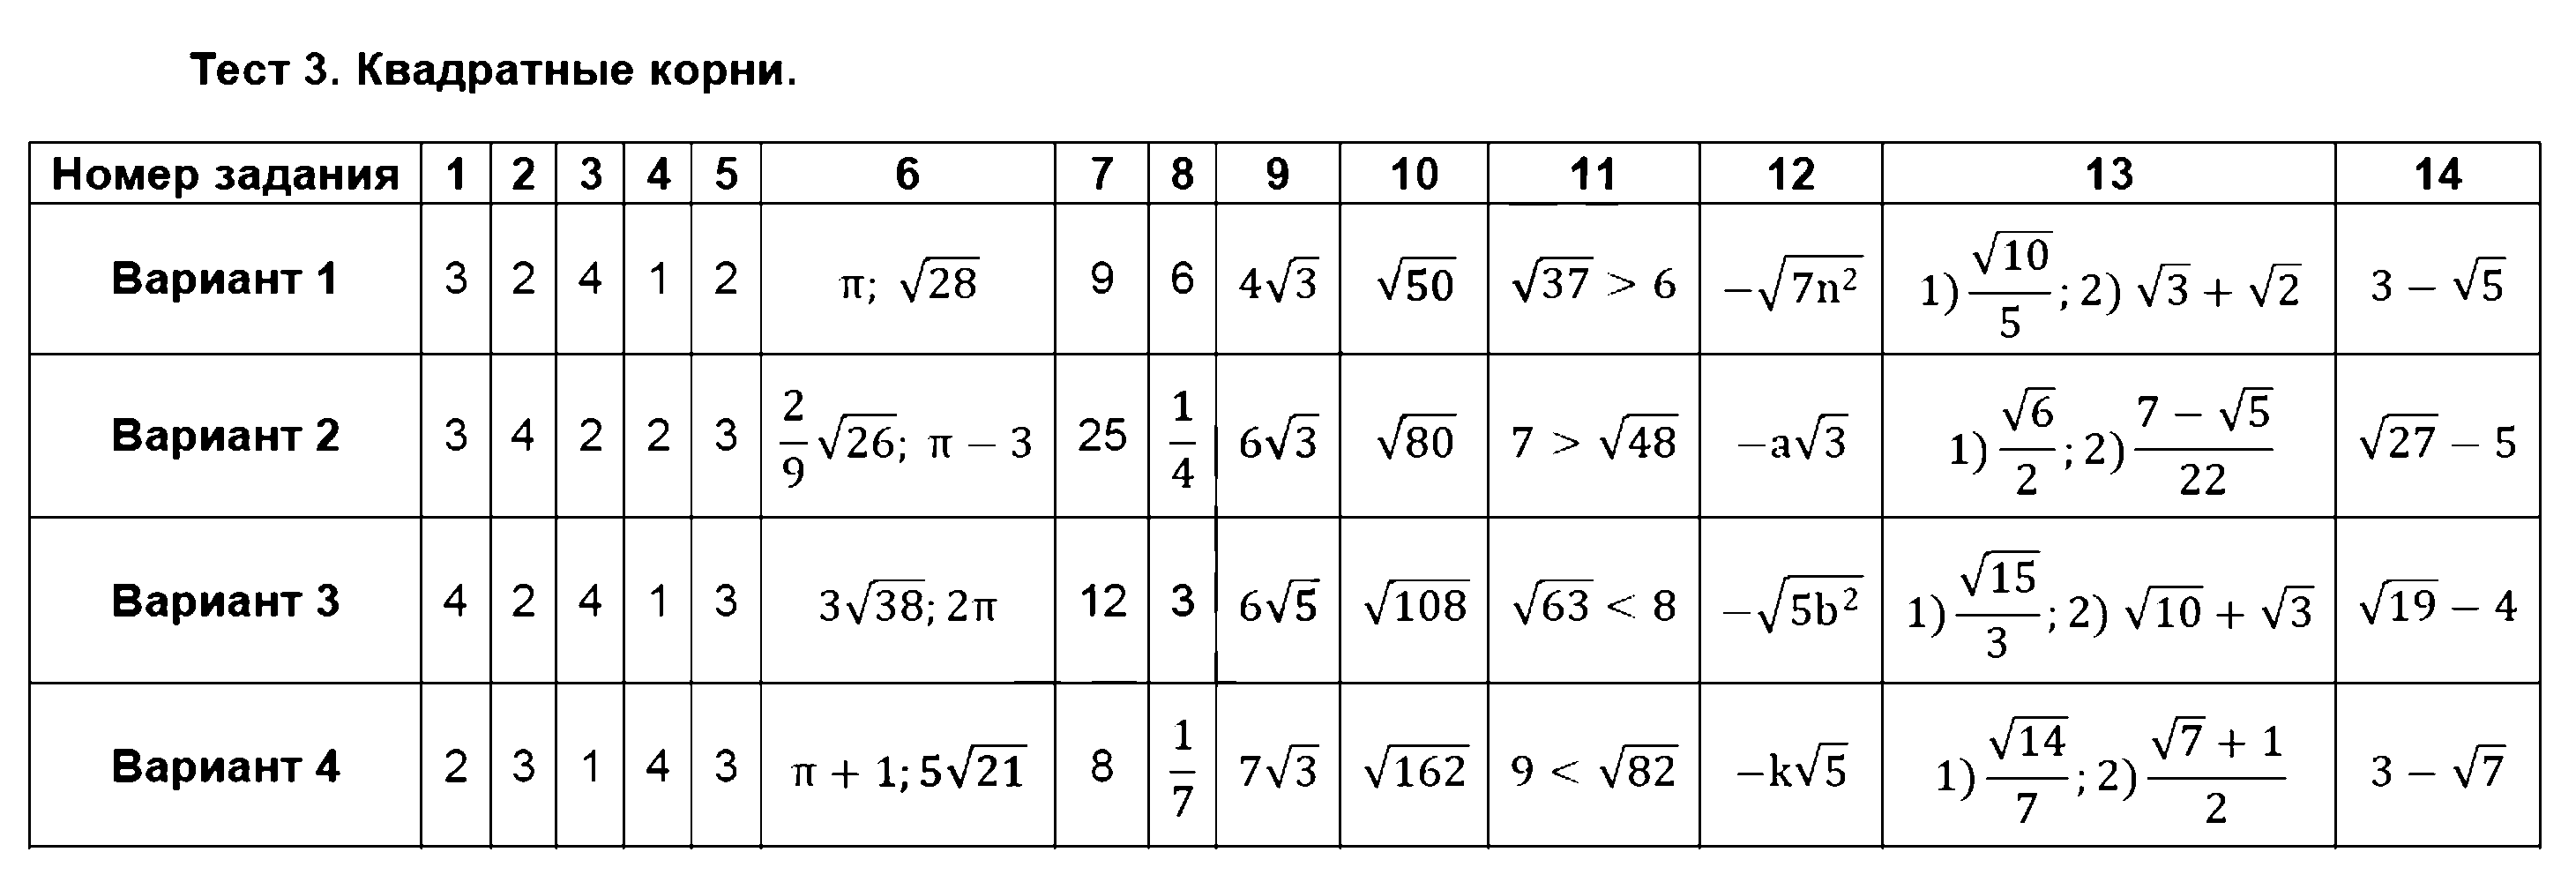 ГДЗ Алгебра 8 класс - Тест 3. Квадратные корни